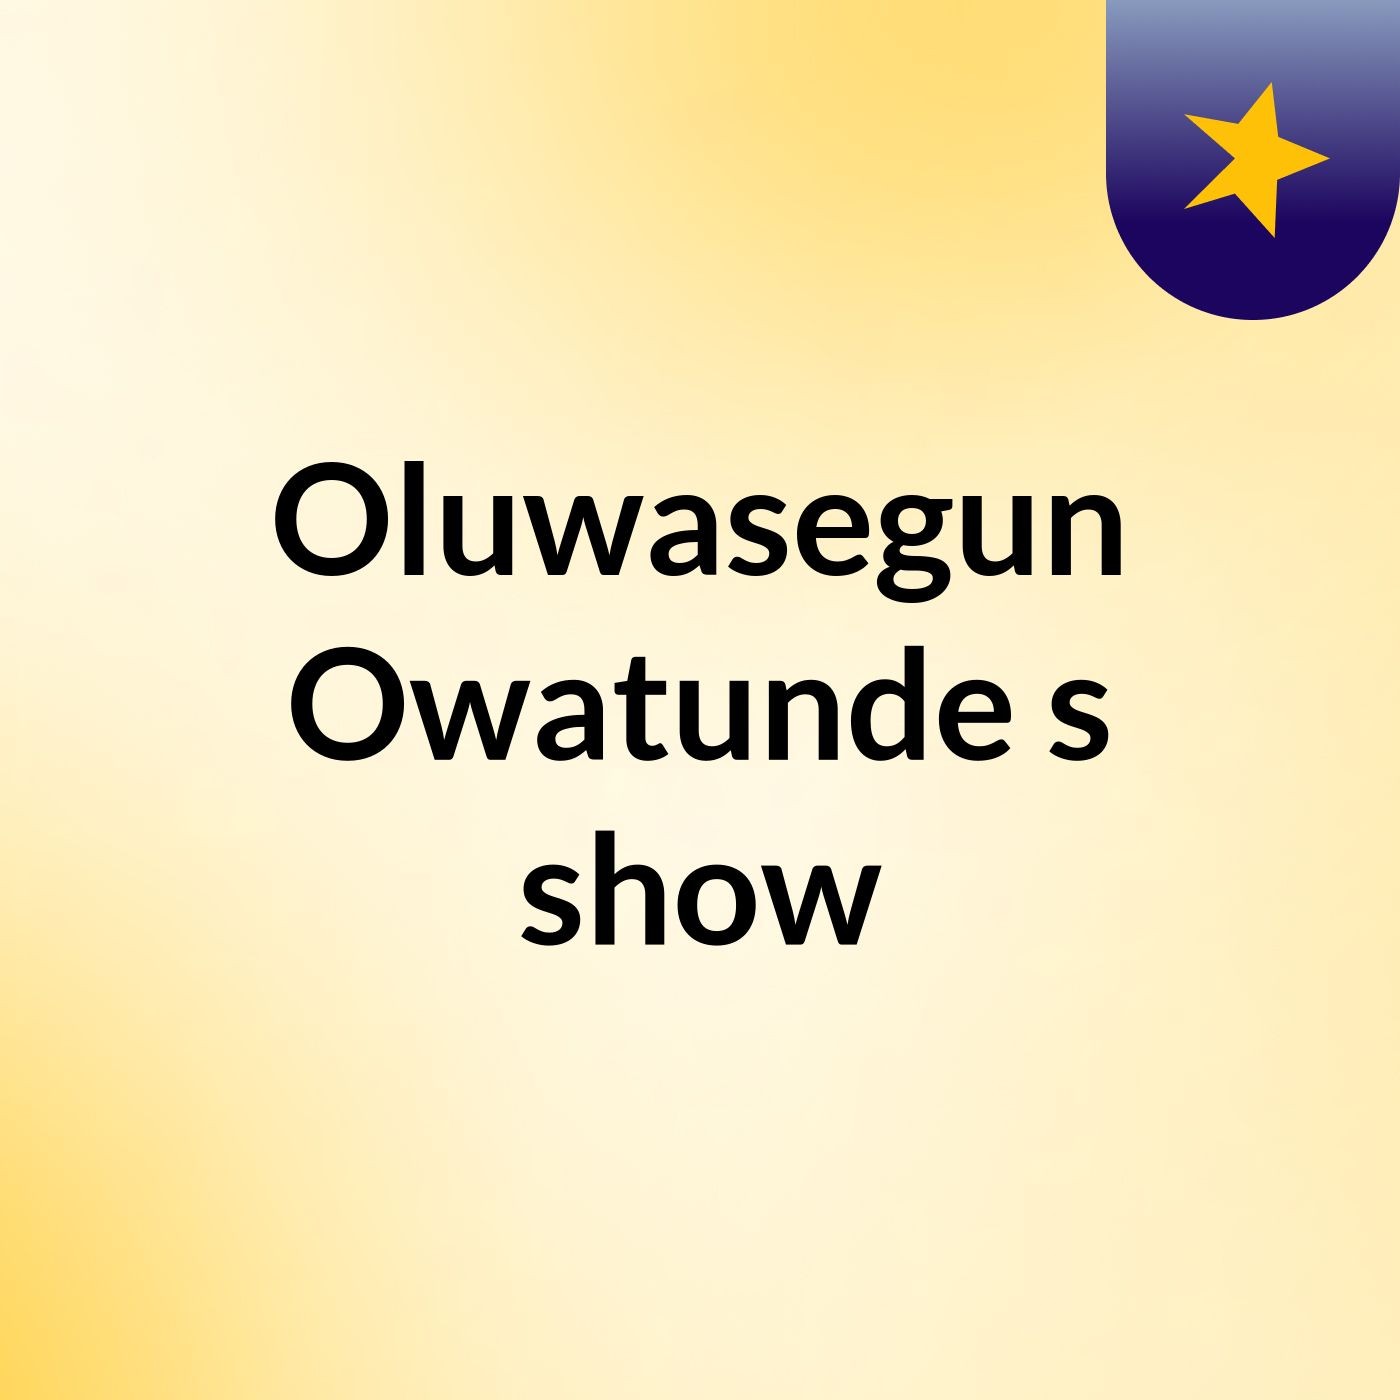 Episode 14 - Oluwasegun Owatunde's show